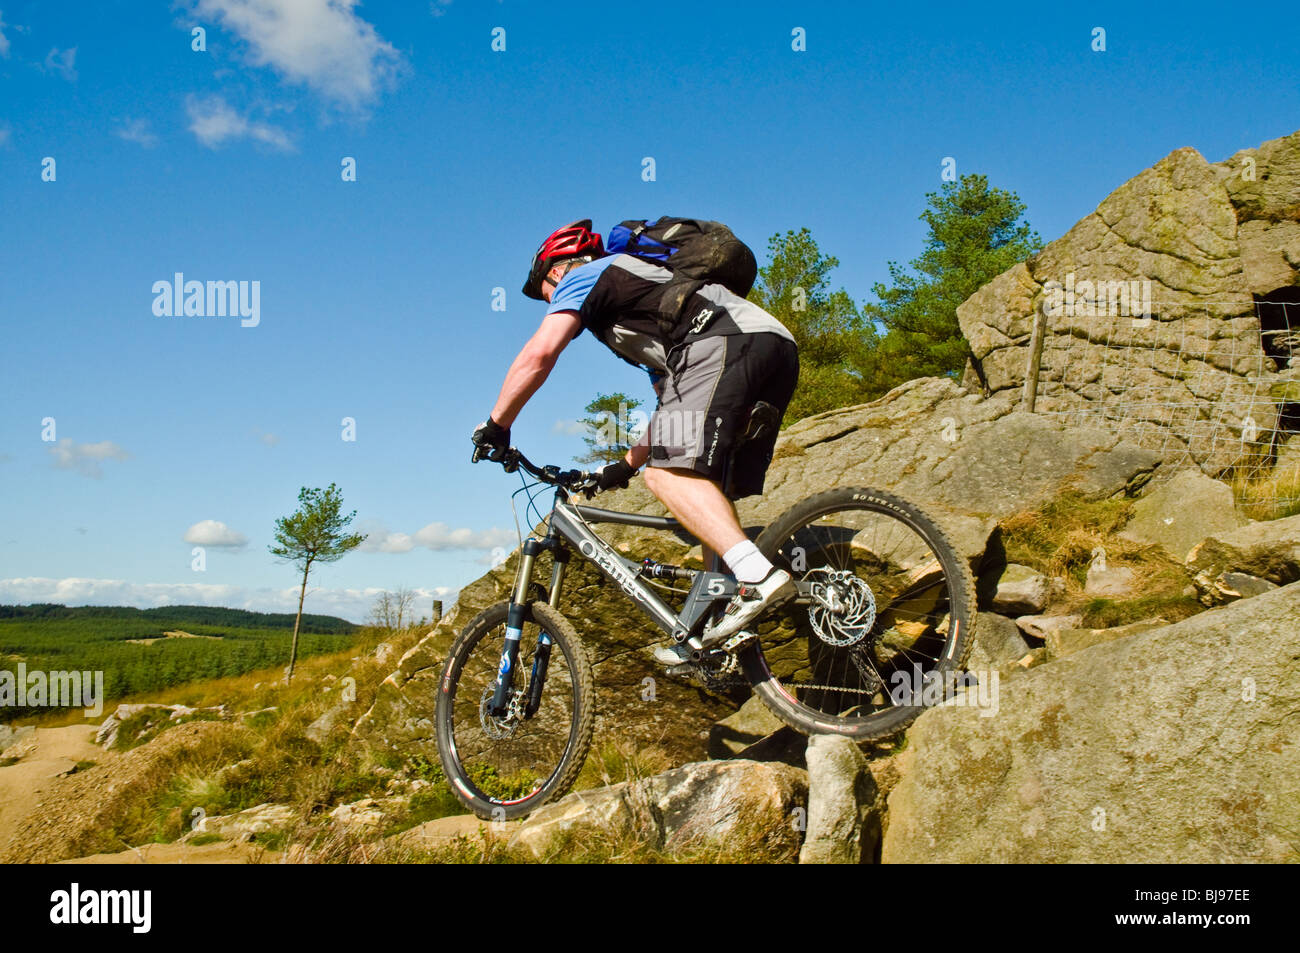 mountain biking in new england